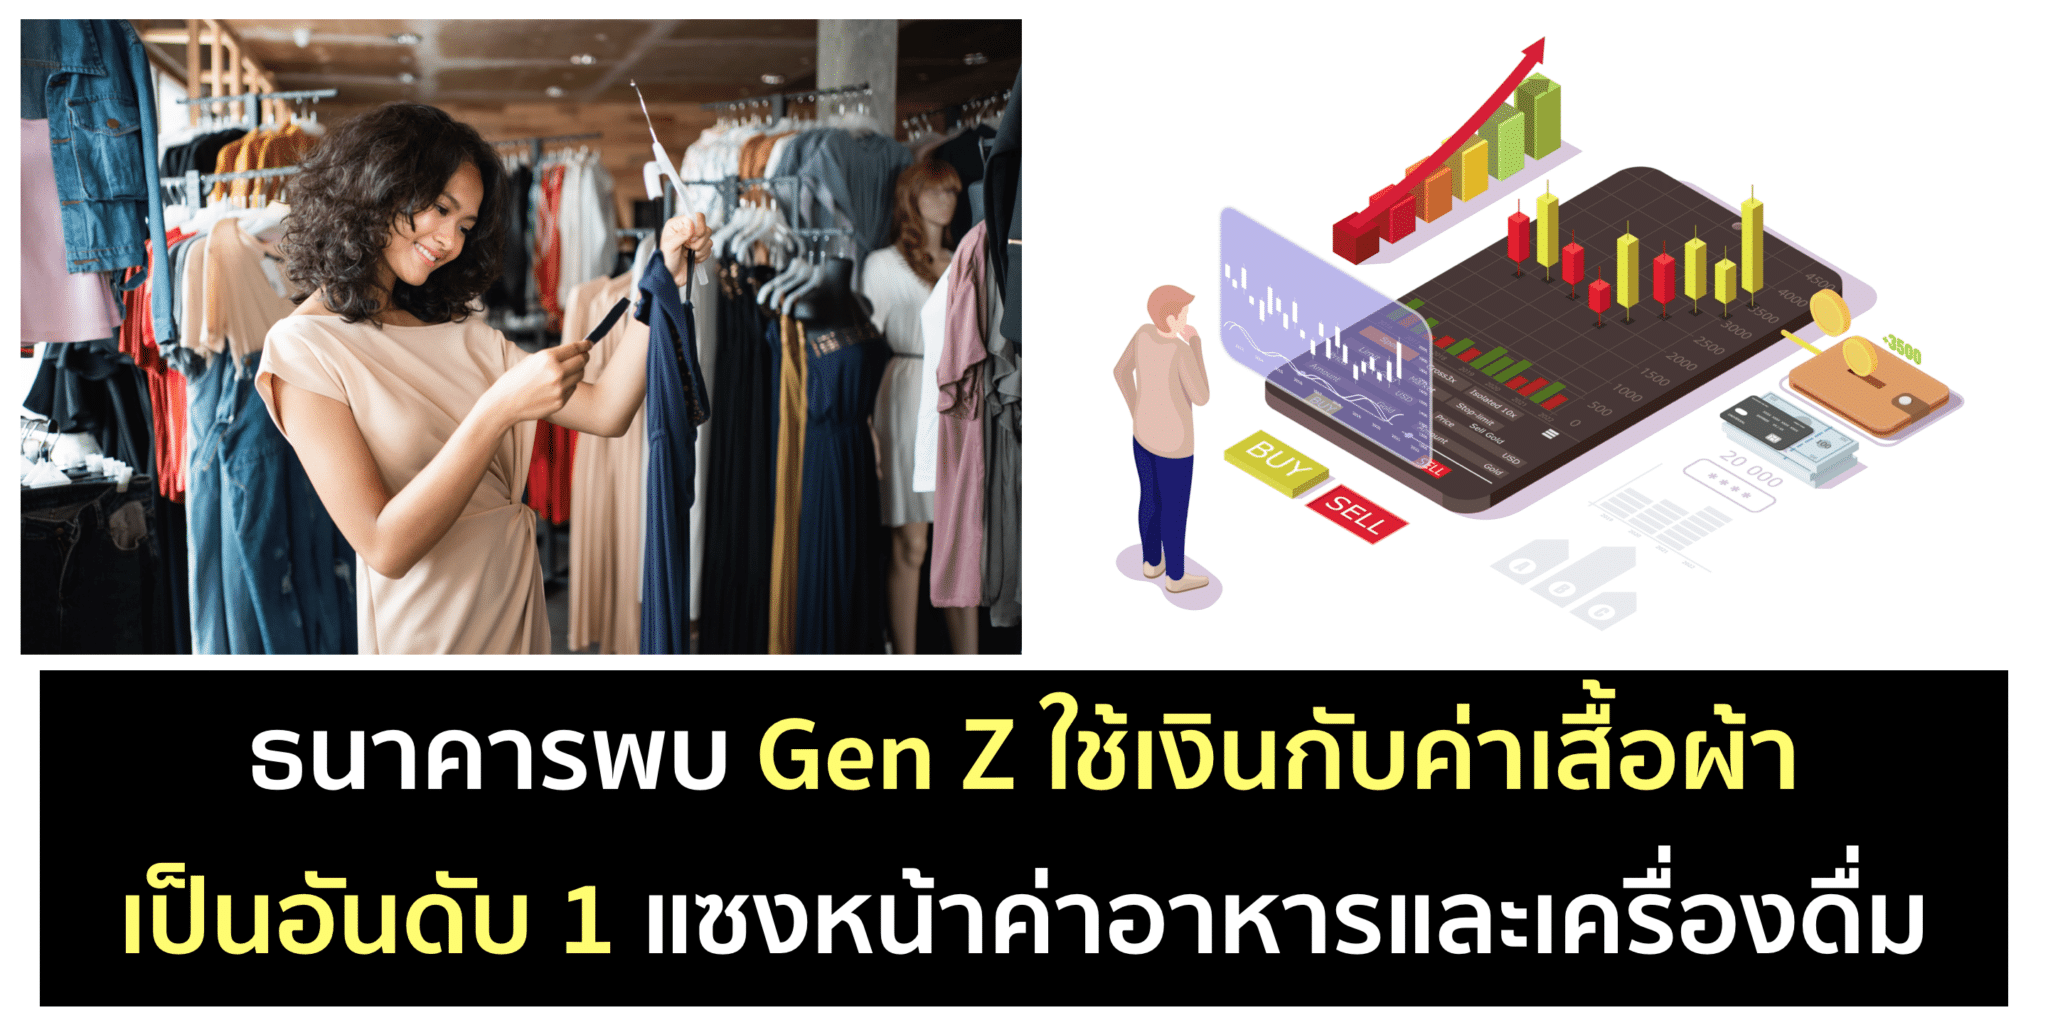 สัดส่วนการใช้เงินของ Gen Z แบ่งให้เสื้อผ้าเป็นอันดับ 1